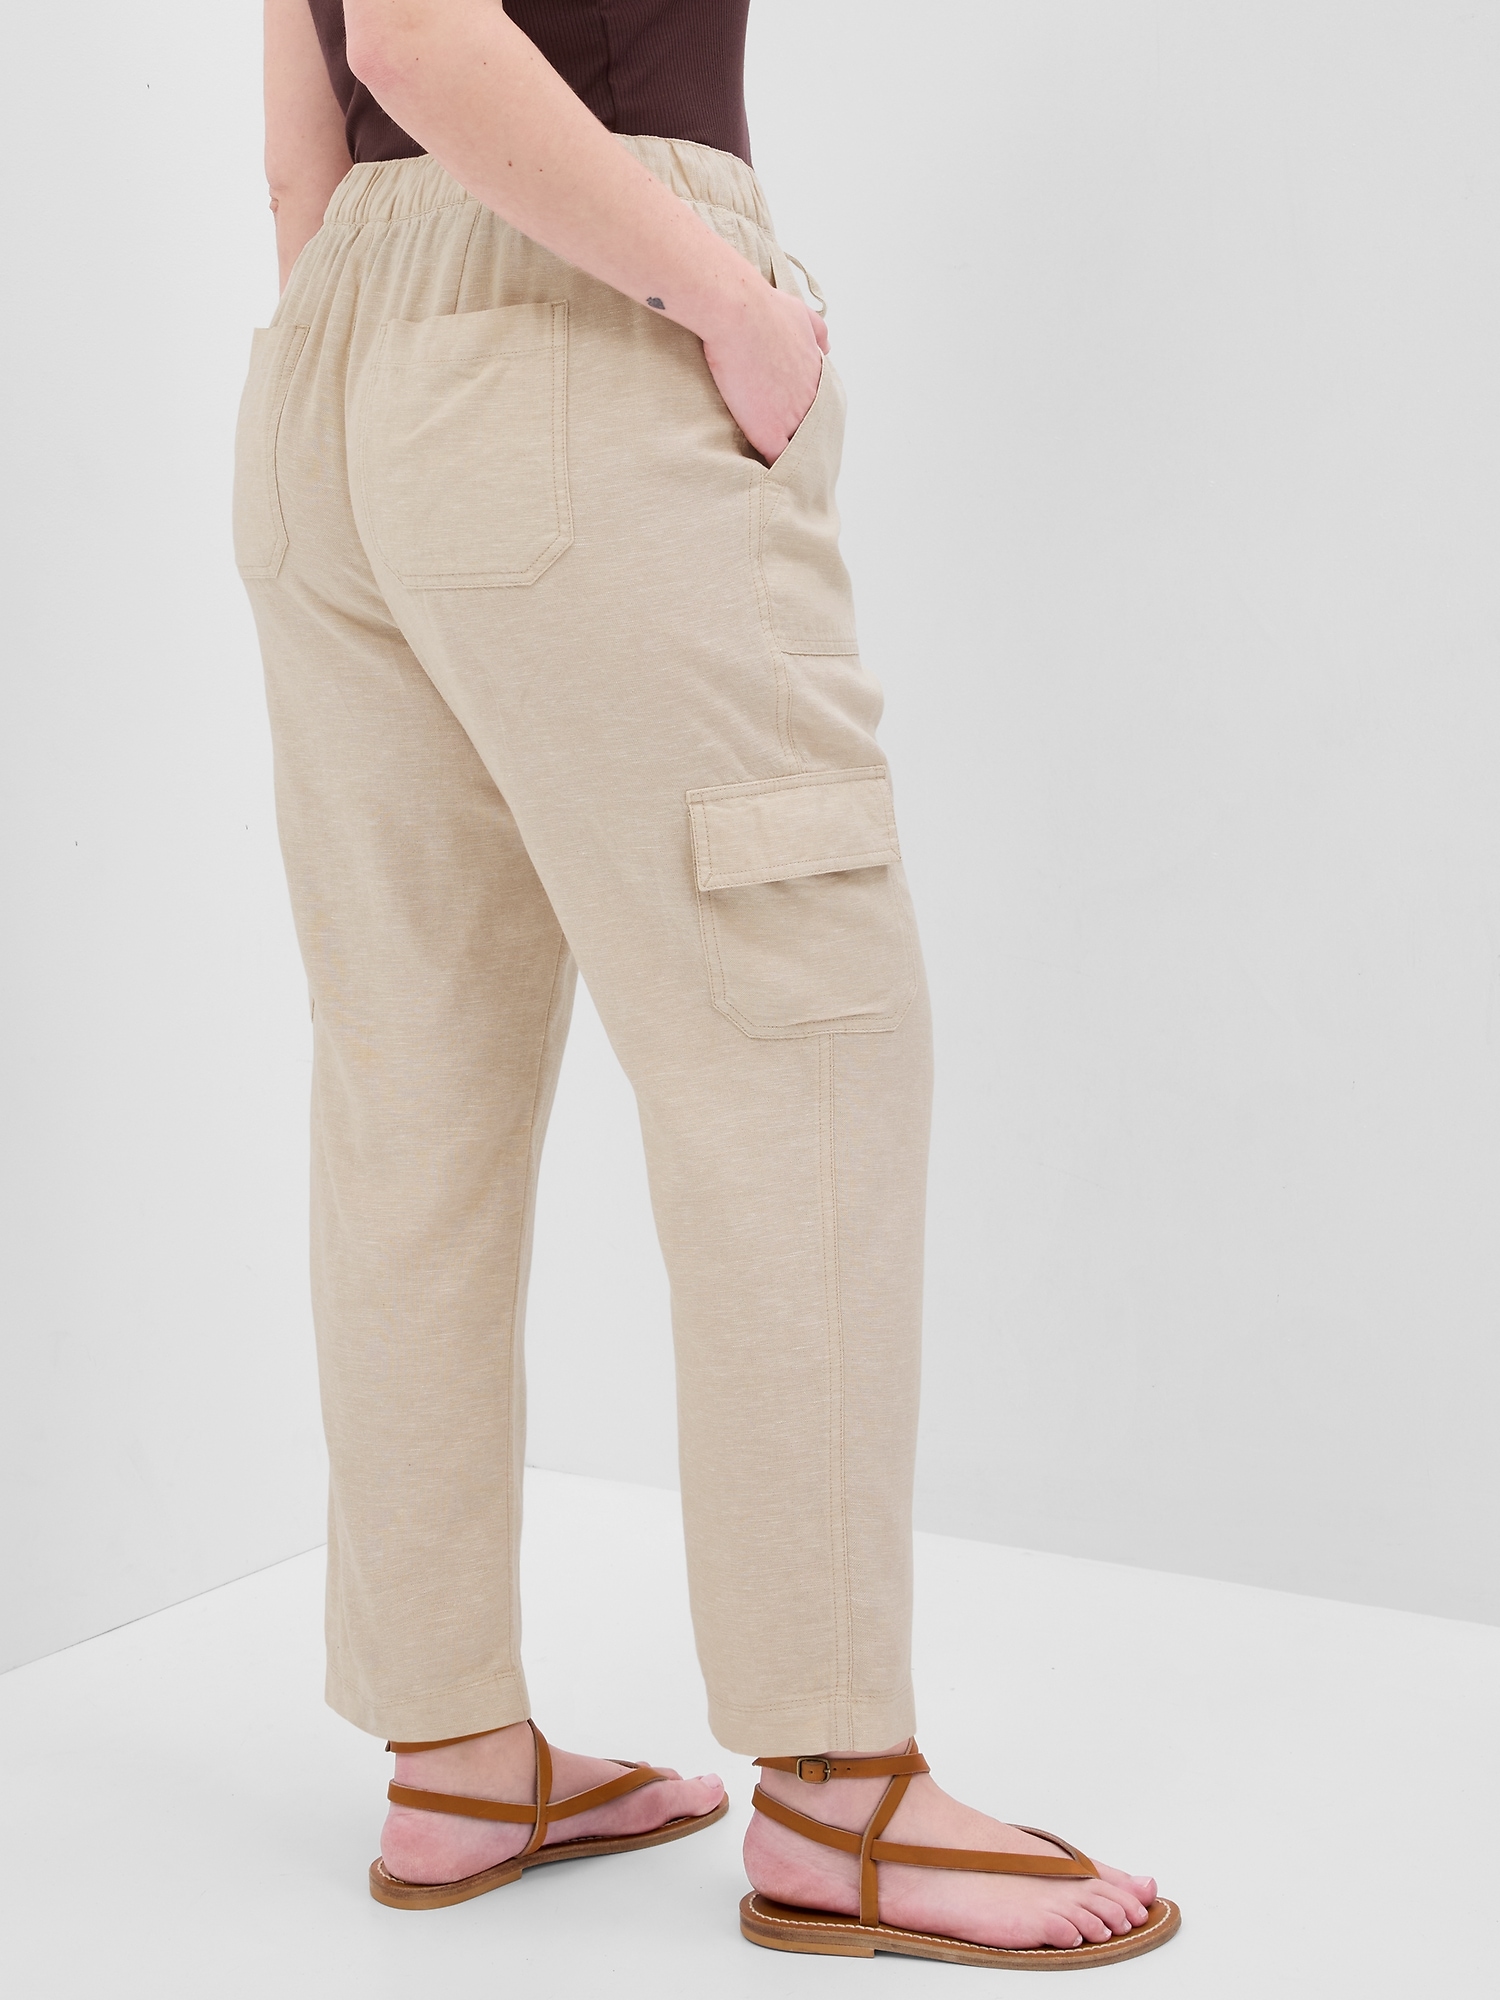 Linen Easy Cargo Pants | Gap Factory